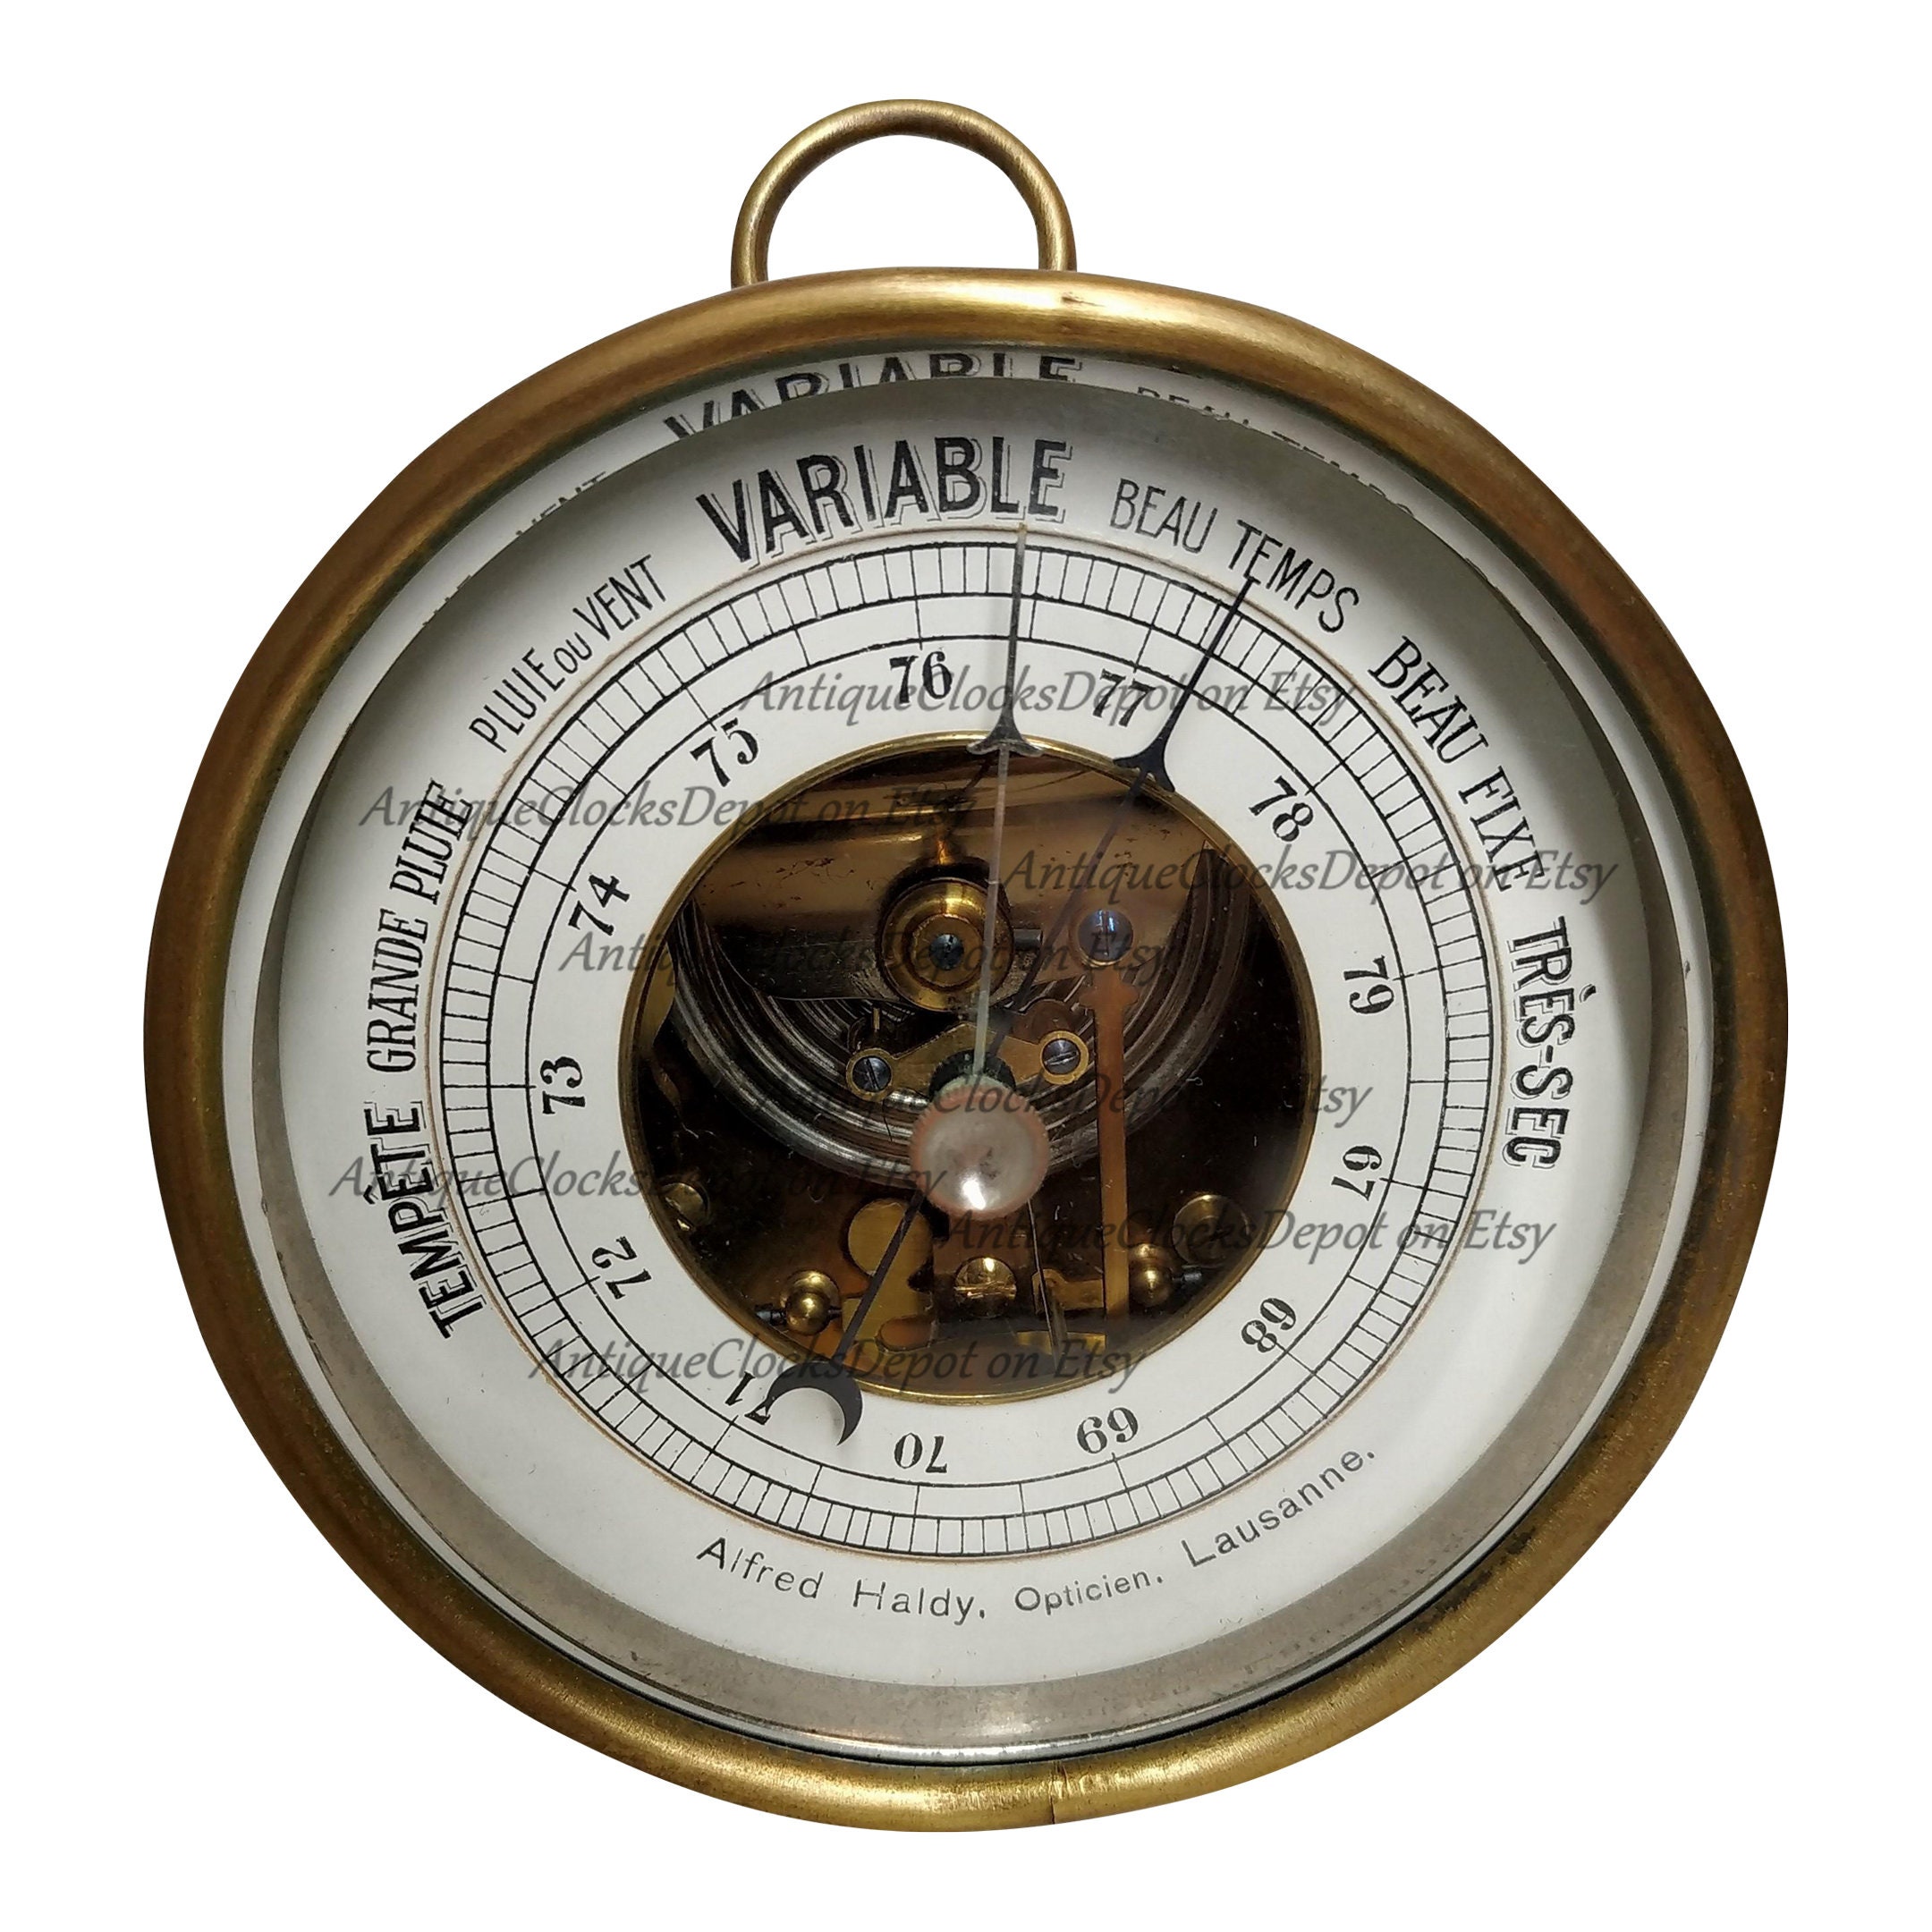 Baromètre Thermomètre aiguille NAUDET - Marineshop : décoration marine